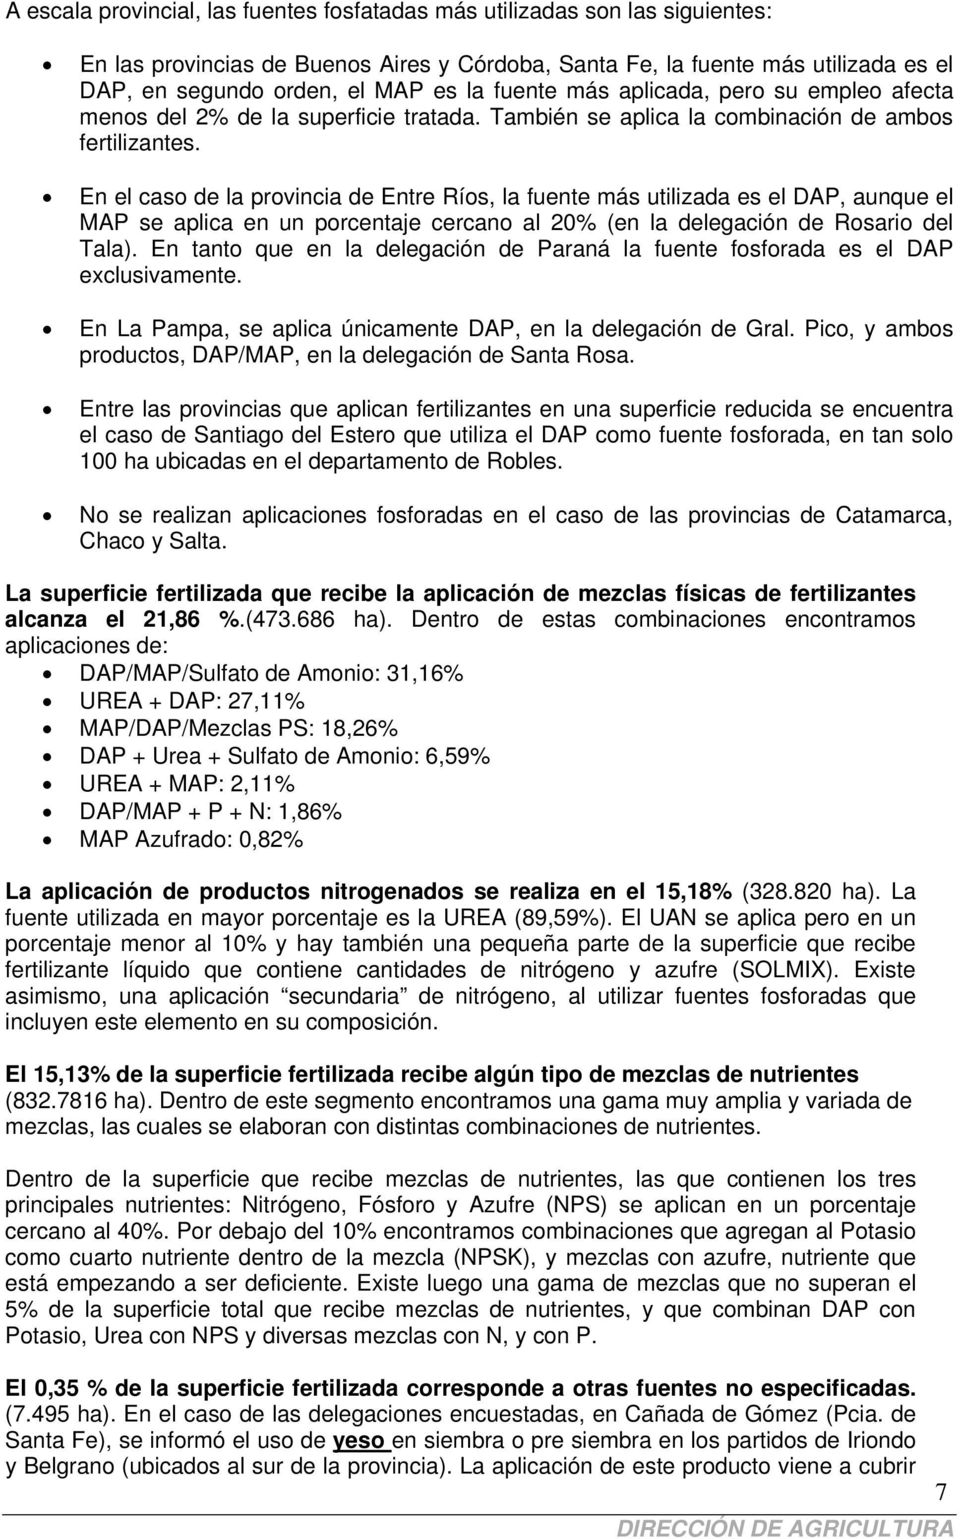 En el caso de la provincia de Entre Ríos, la fuente más utilizada es el DAP, aunque el MAP se aplica en un porcentaje cercano al 20% (en la delegación de Rosario del Tala).